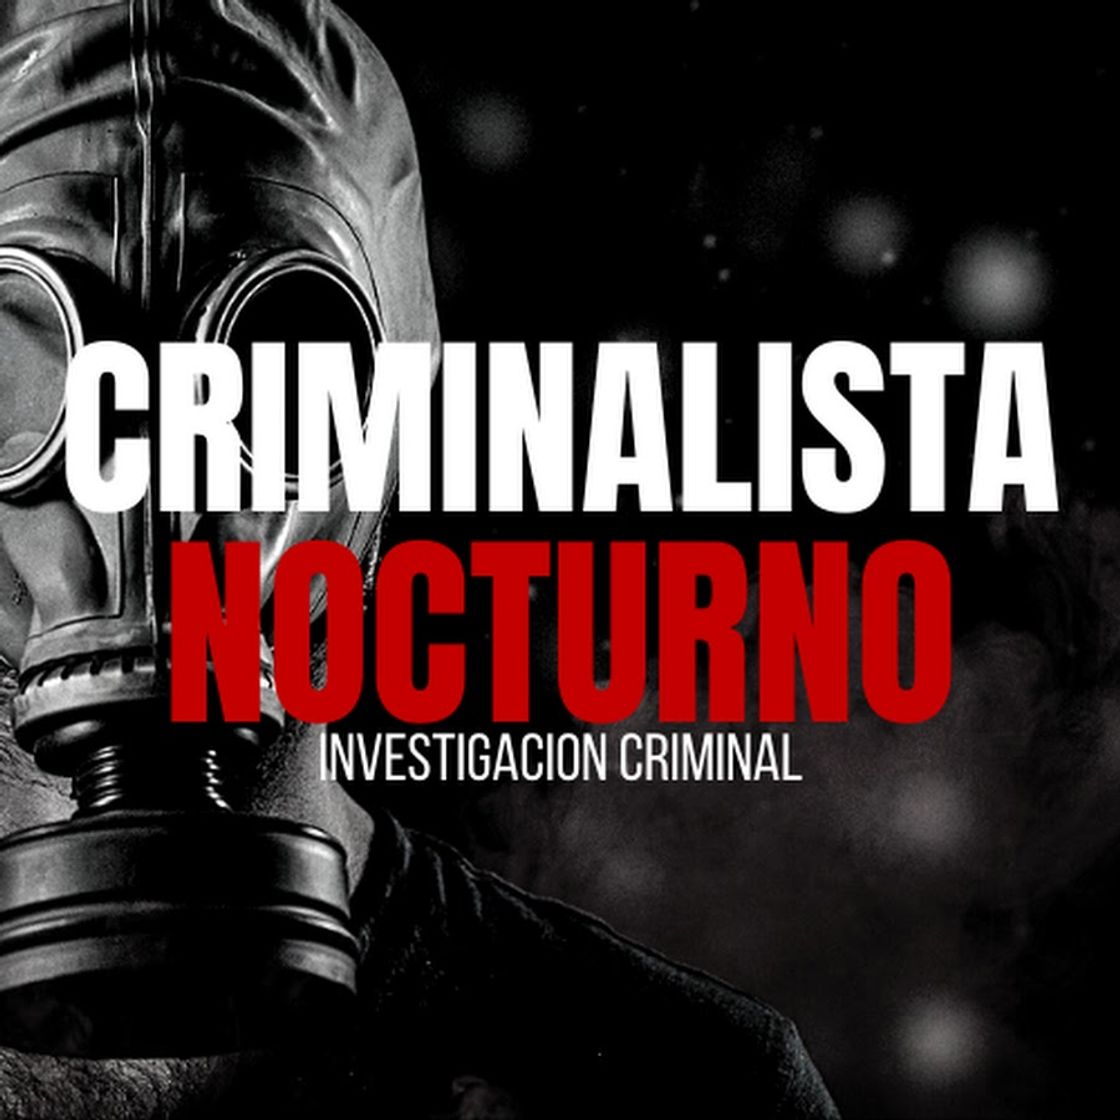 Criminalista Nocturno - YouTube